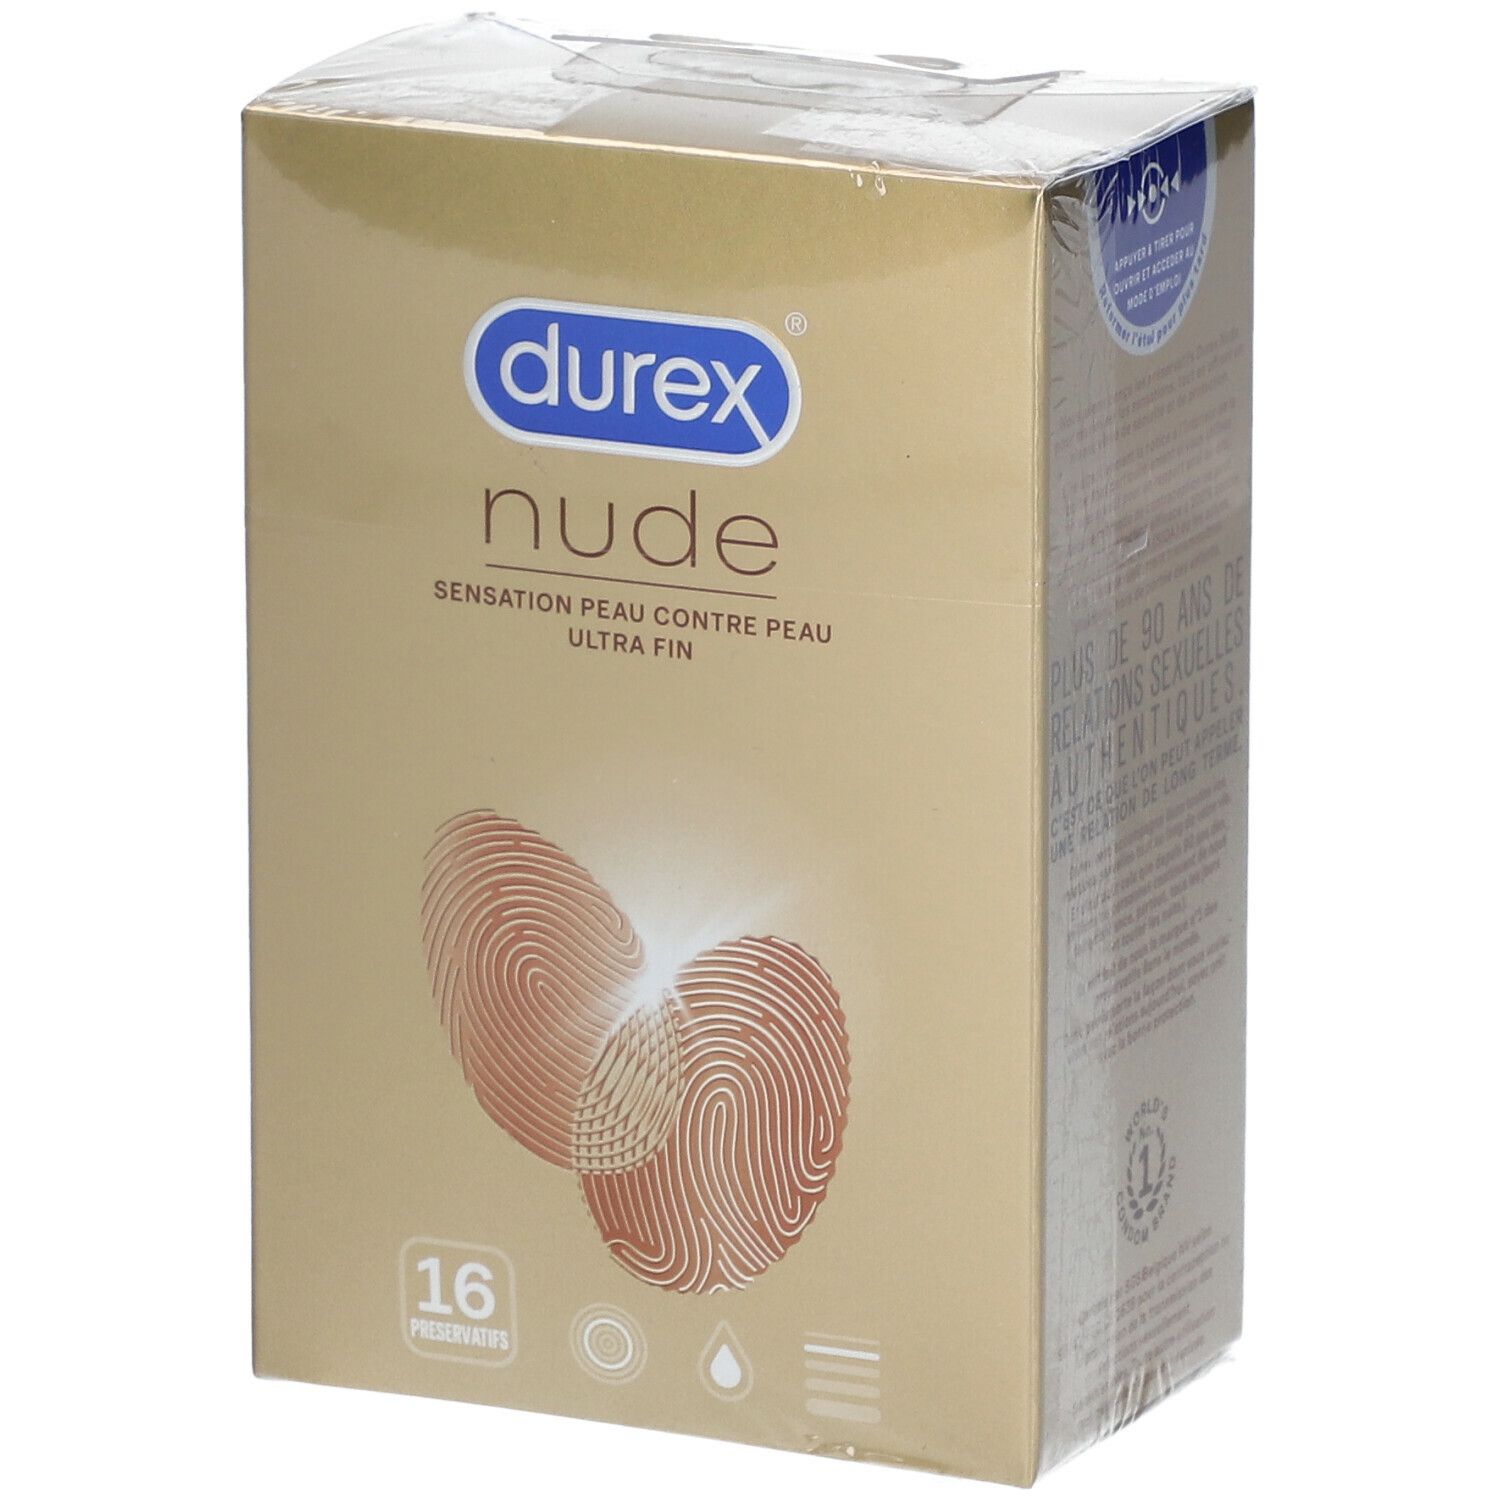 durex® Nude Ultra Fin Préservatifs Sensation Peau contre Peau